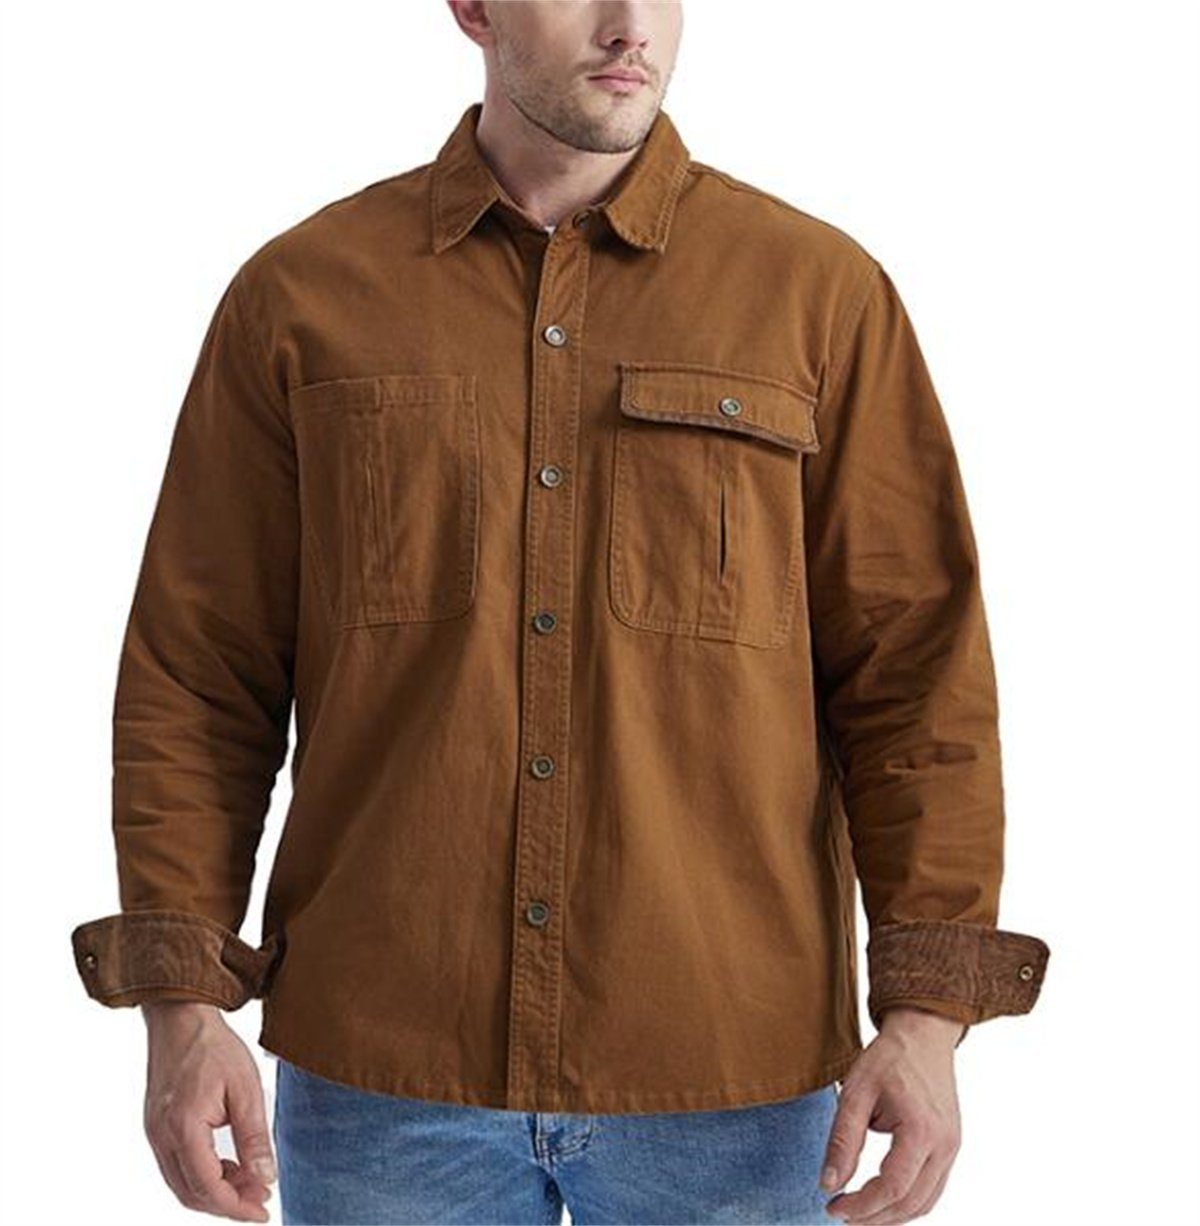 Discaver Sweatshirt Übergroßes, übergroßes Hemd aus Cord in Kontrastfarbe mit Kragen dunkelbraun